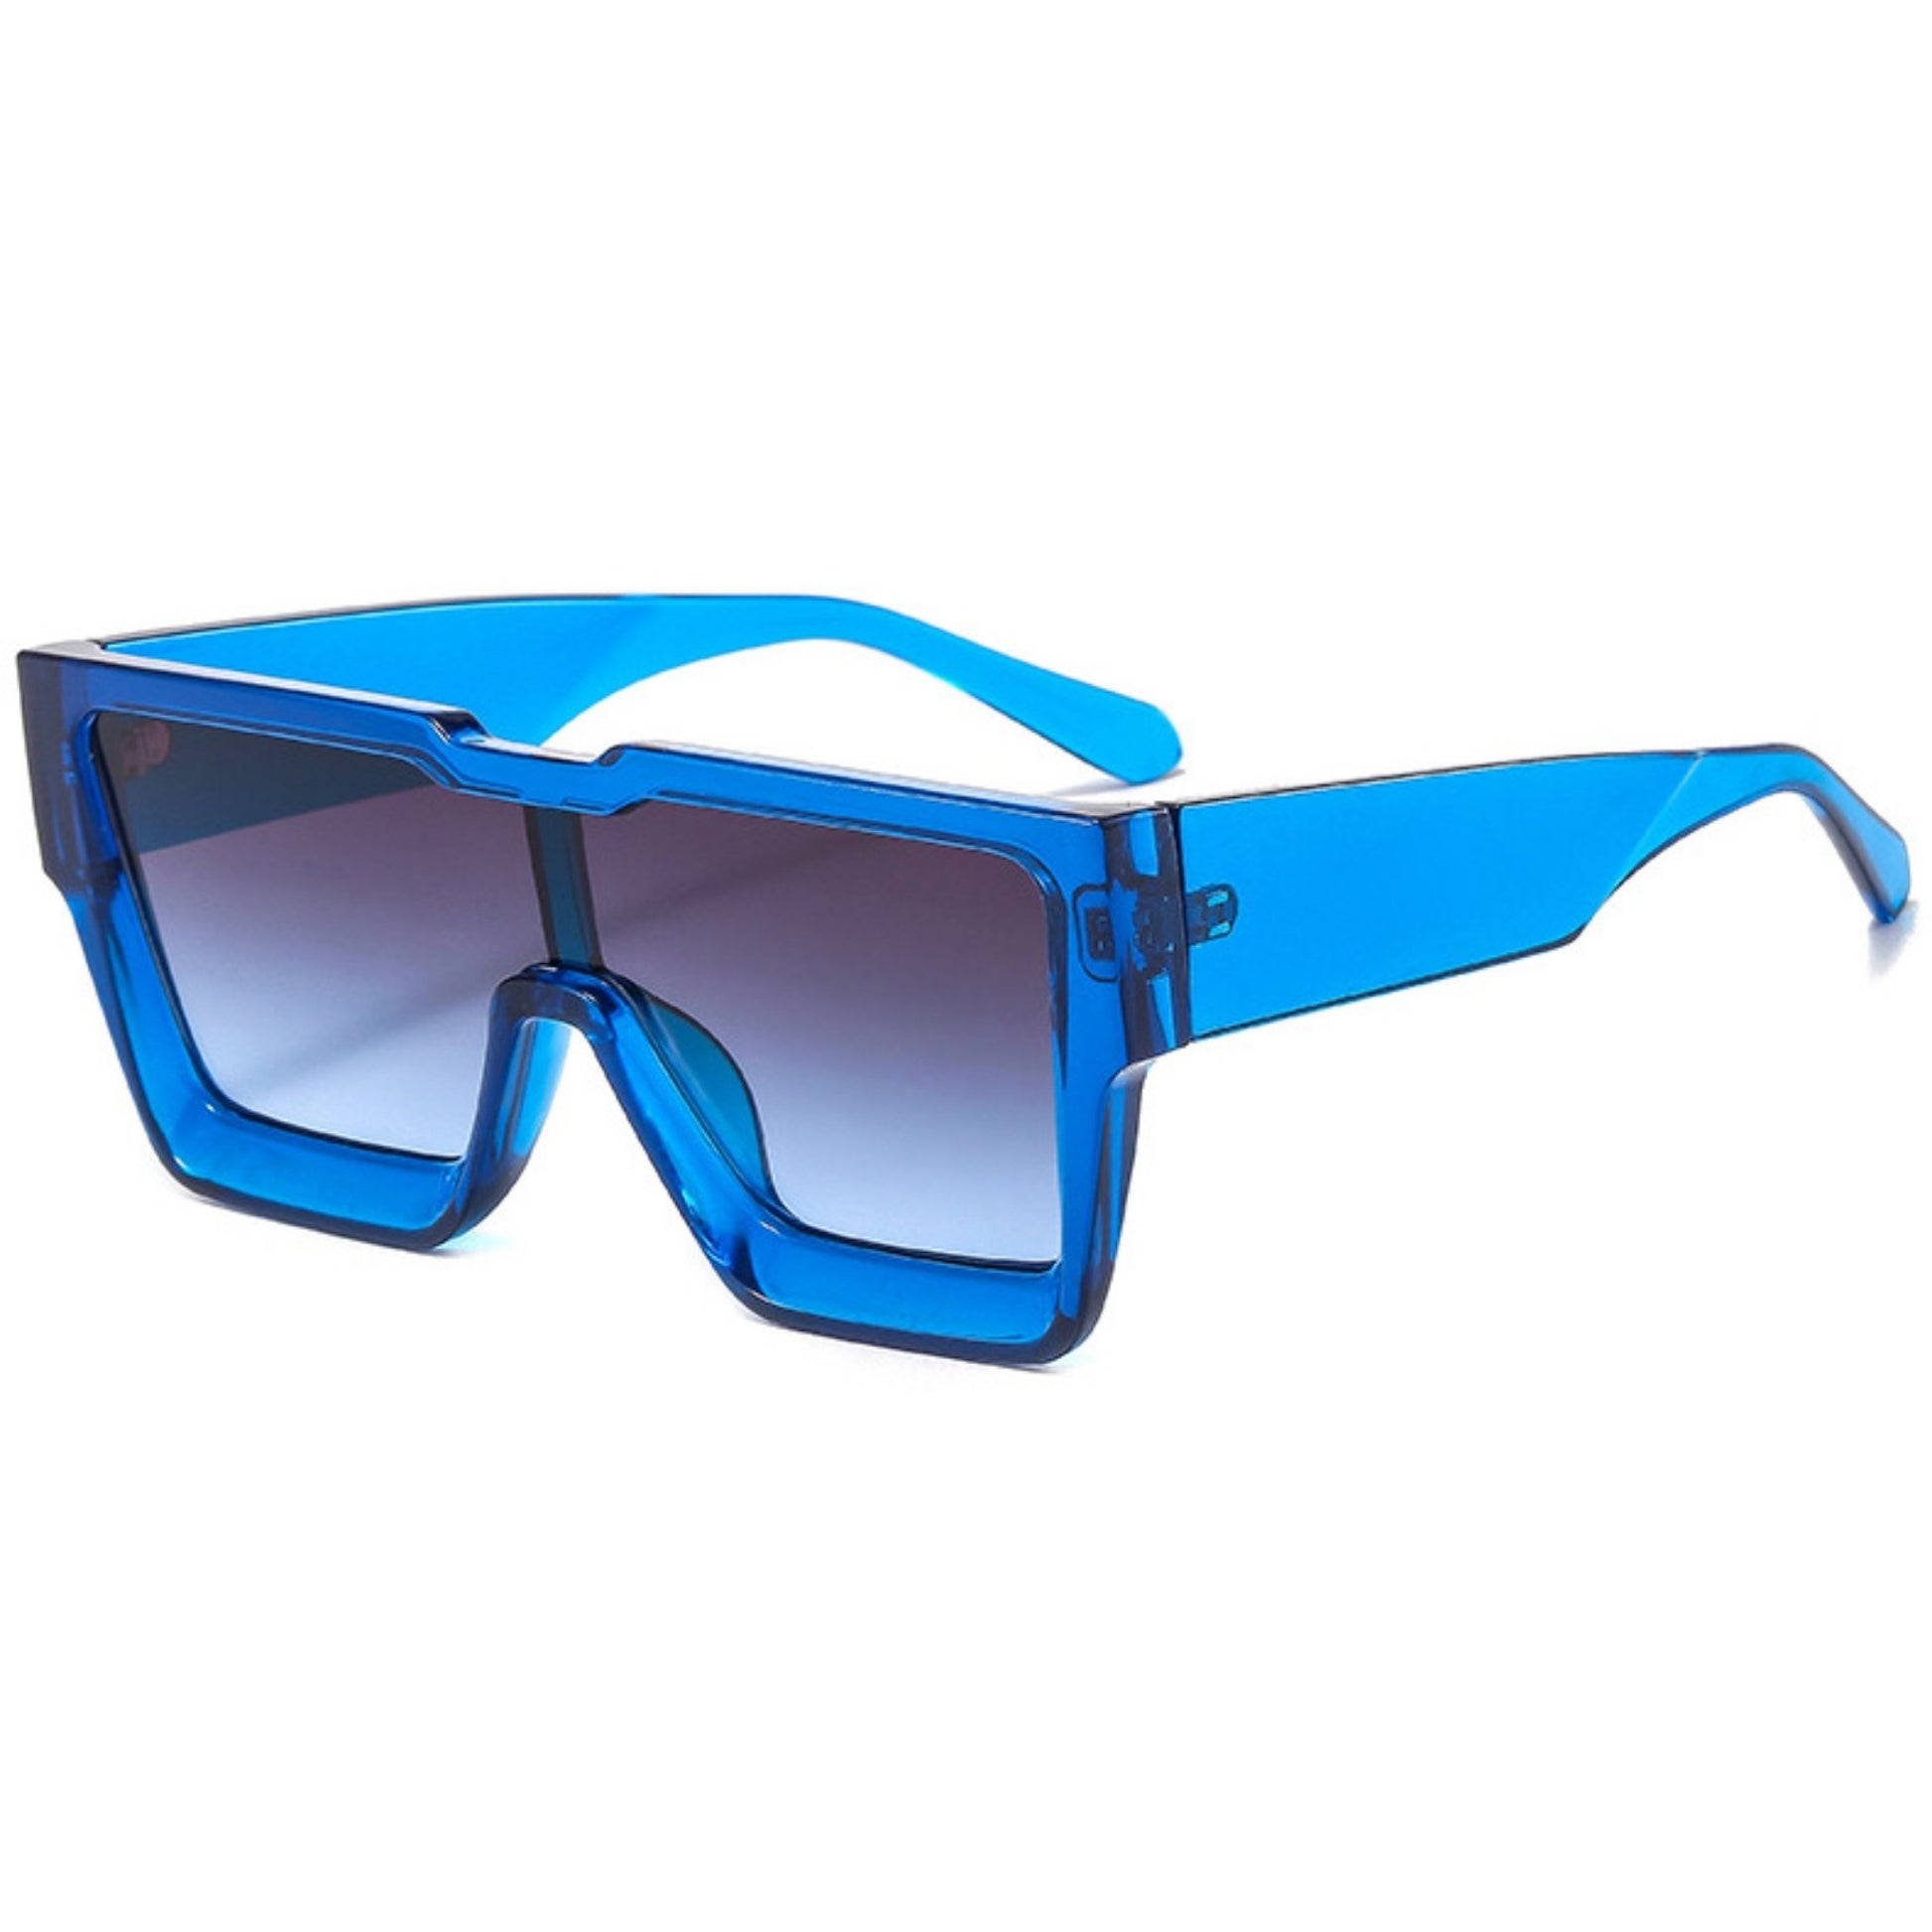 Γυαλιά ηλίου Toronto (Μάσκα) από την Exposure Sunglasses με προστασία UV400 με μπλε σκελετό και μαύρο φακό.Πλαινή όψη.